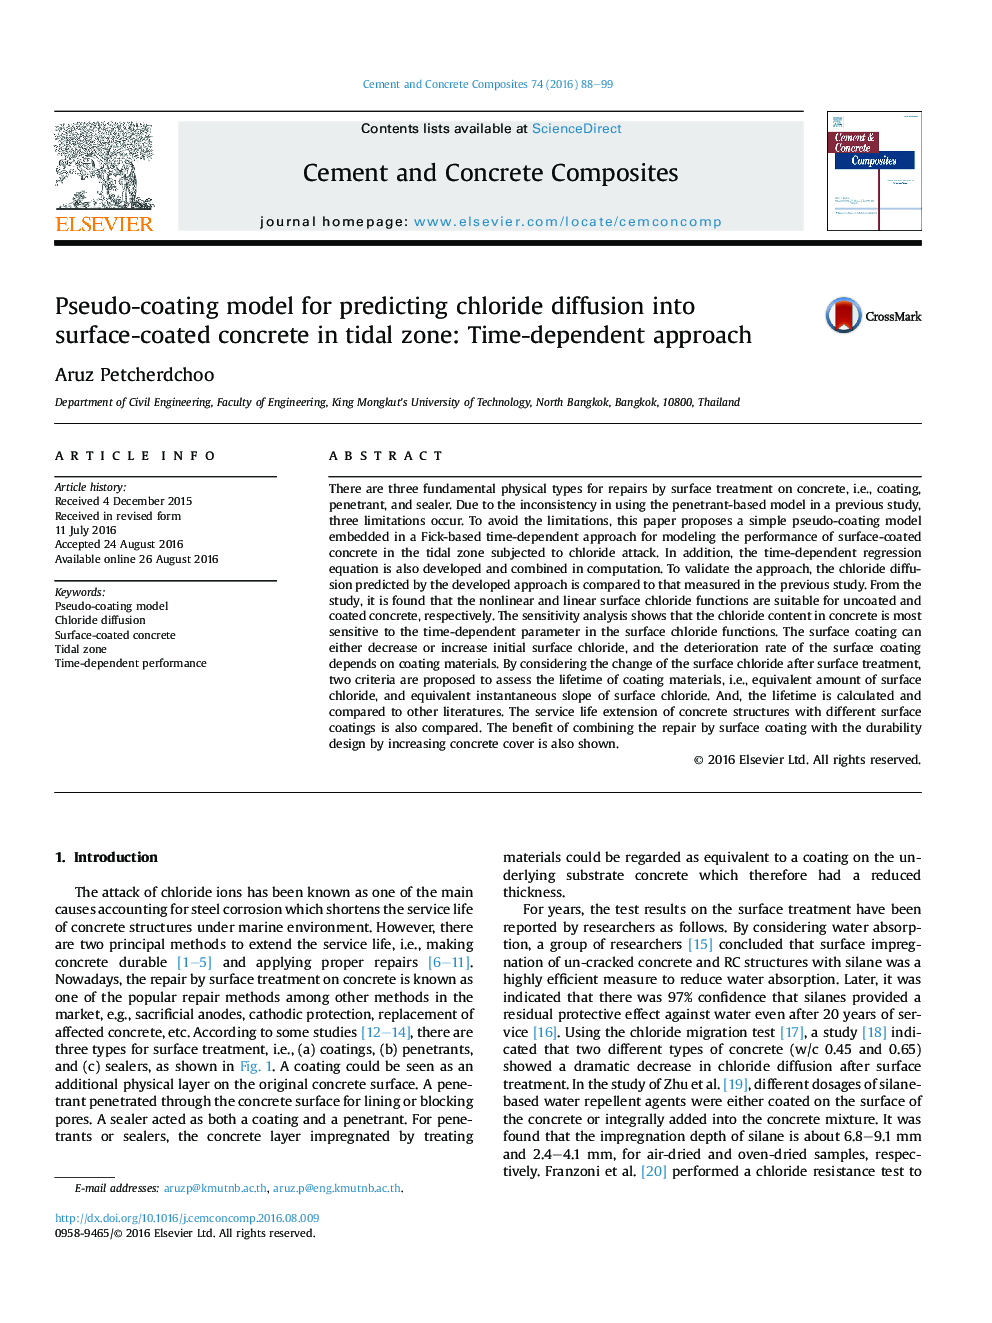 مدل پوشش شبیه سازی برای پیش بینی نفوذ کلرید به بتن پوشش داده شده در منطقه جزر و مد: رویکرد وابسته به زمان 